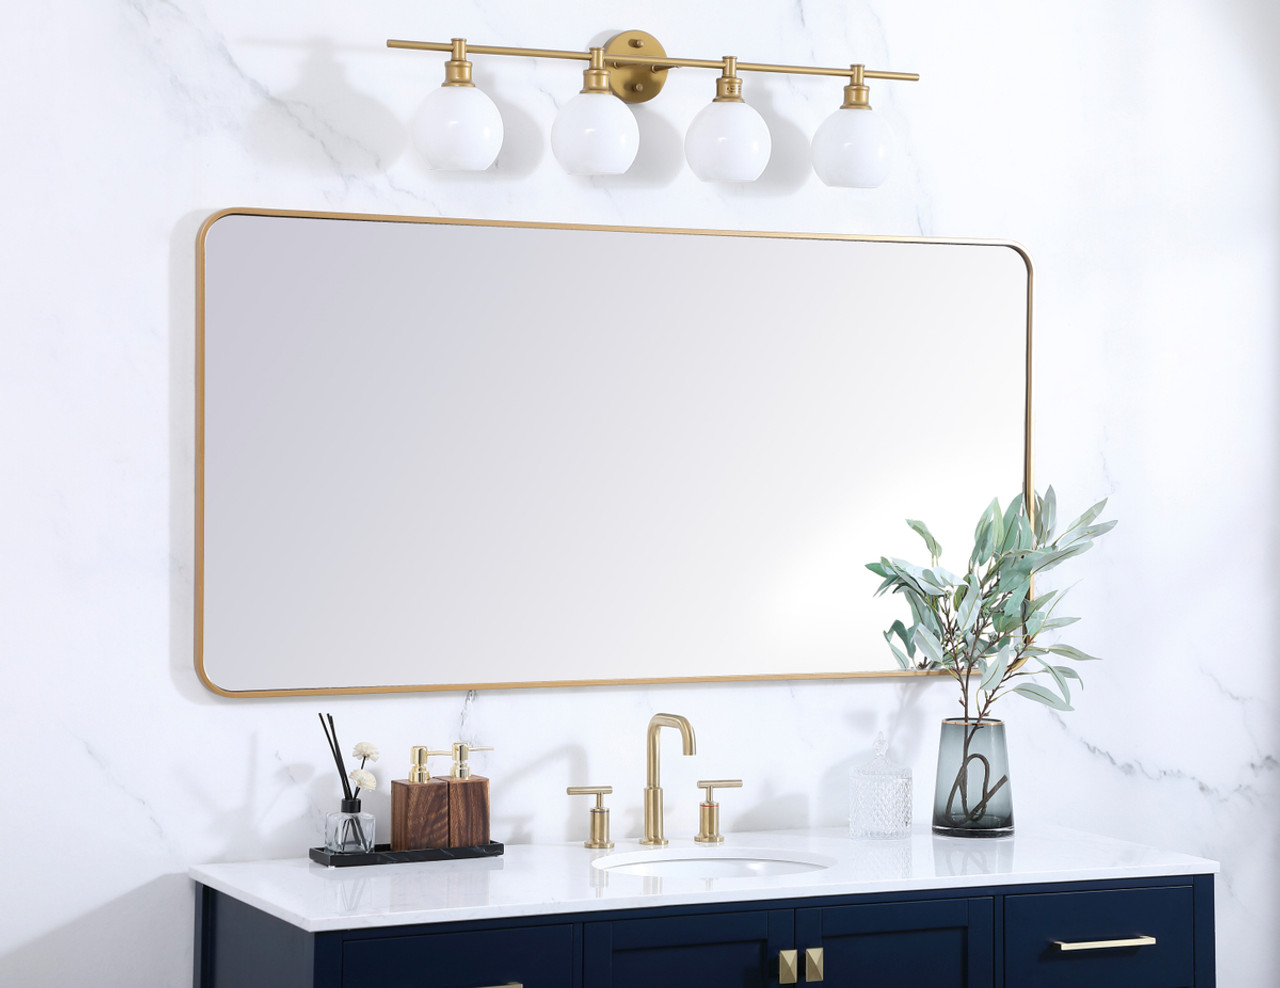 Elegant Decor MR803060BR Soft corner metal rectangular mirror 30x60 inch in Brass